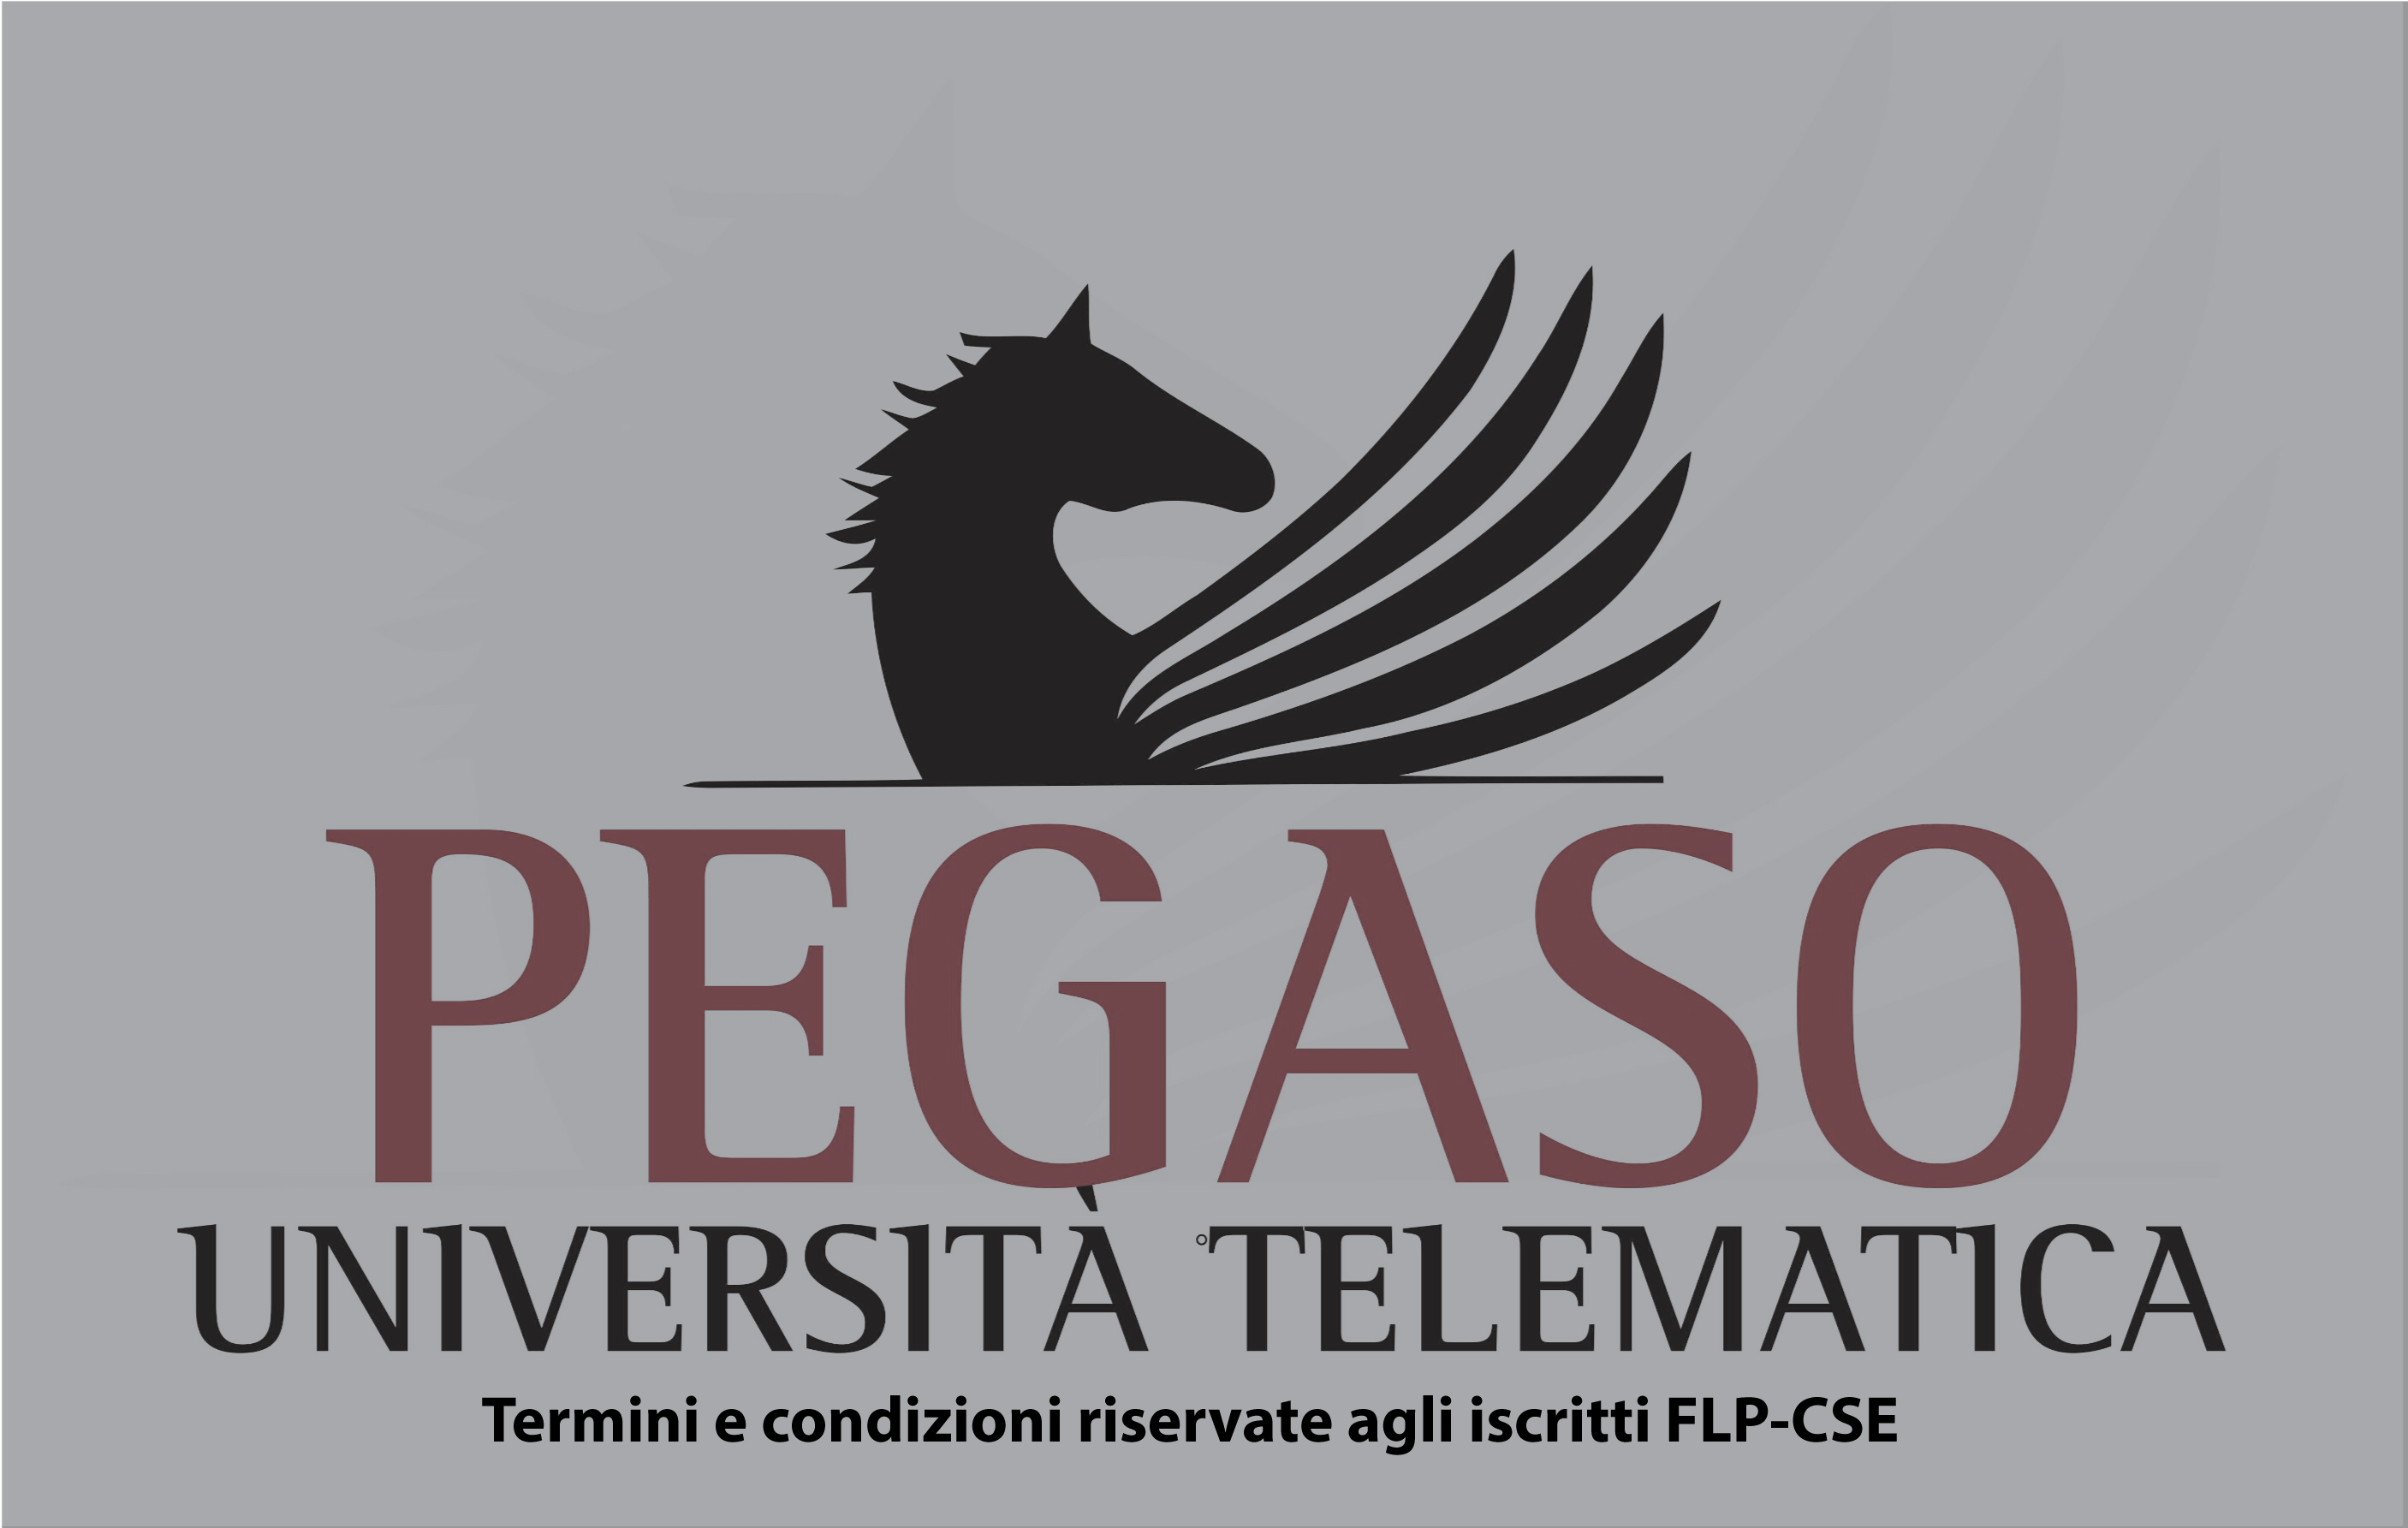 UNIVERSITA’ PEGASO”  Iscriviti con ECP_CSE a condizioni agevolate